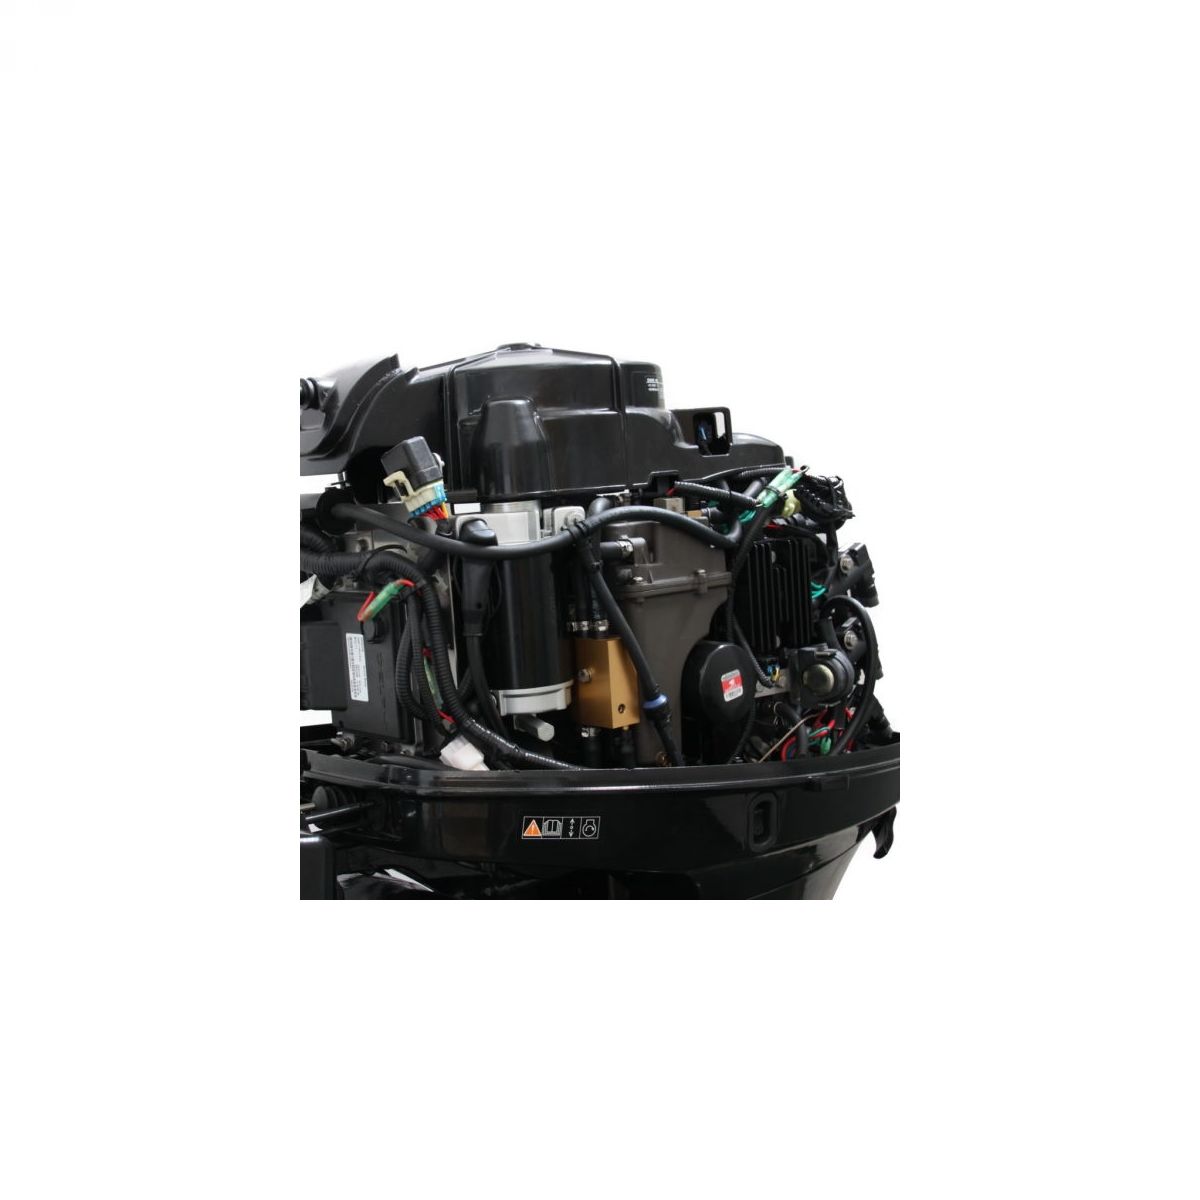 PARSUN F40 FWL-T-EFI vanbrodski motor